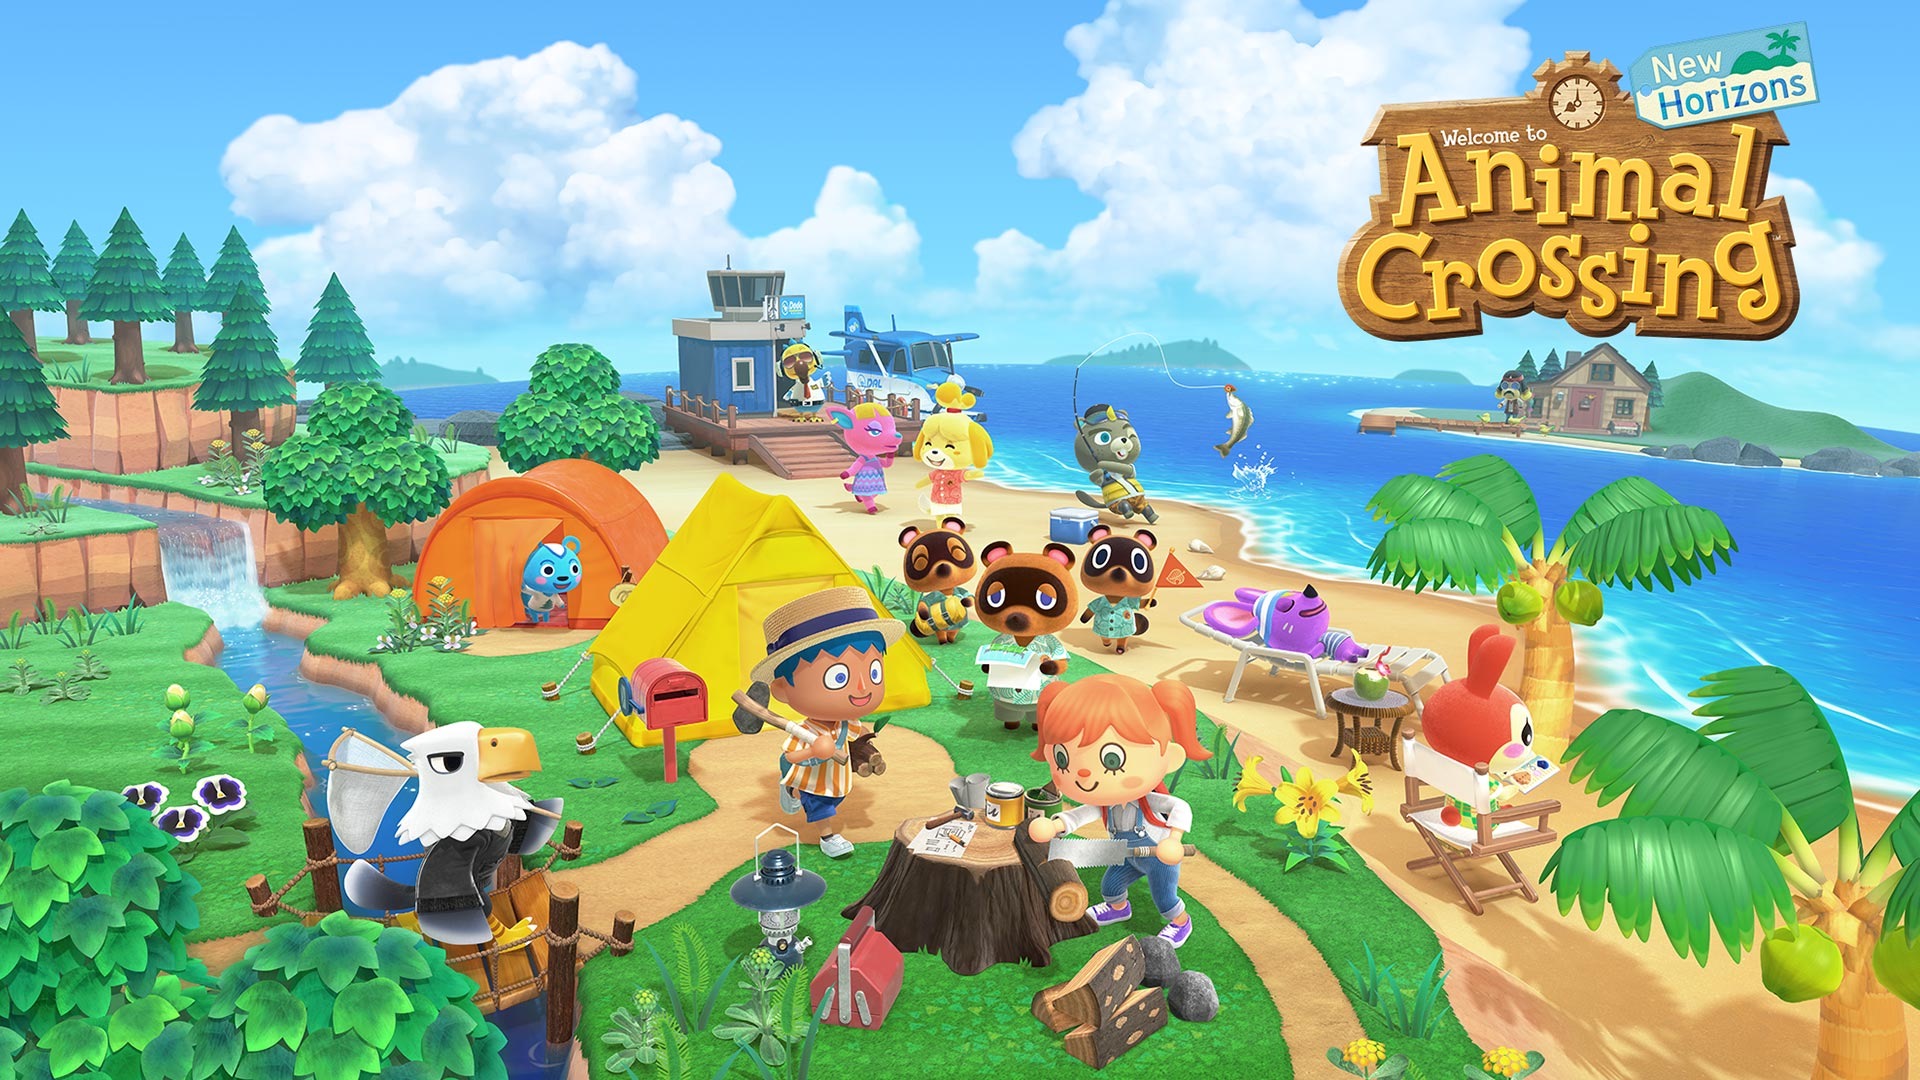 Nintendo's new game, Animal Crossing: New Horizons